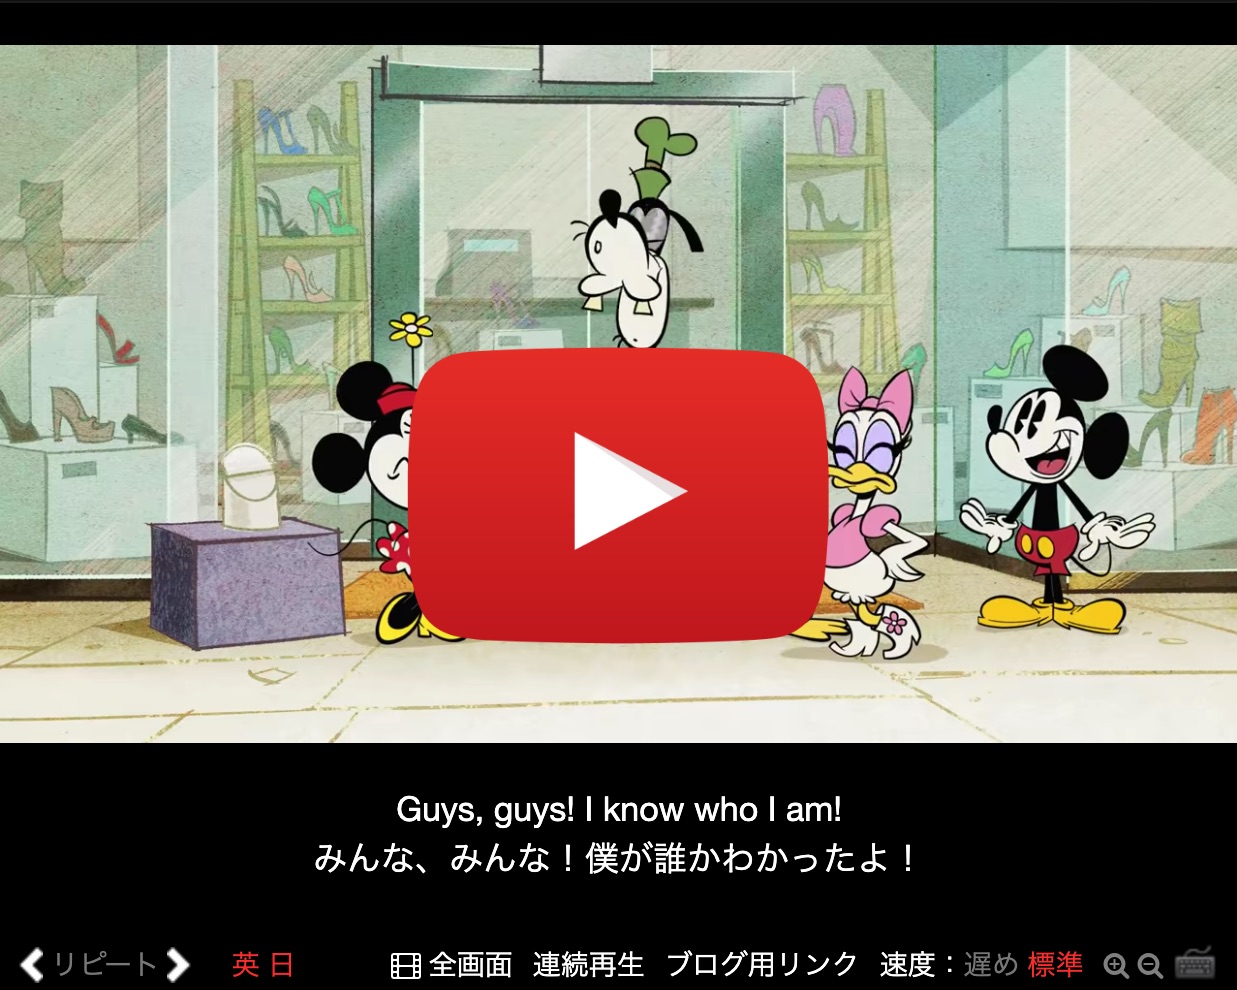 年最も見られた動画は アニメで英語 ミッキーと帽子 第 3 位